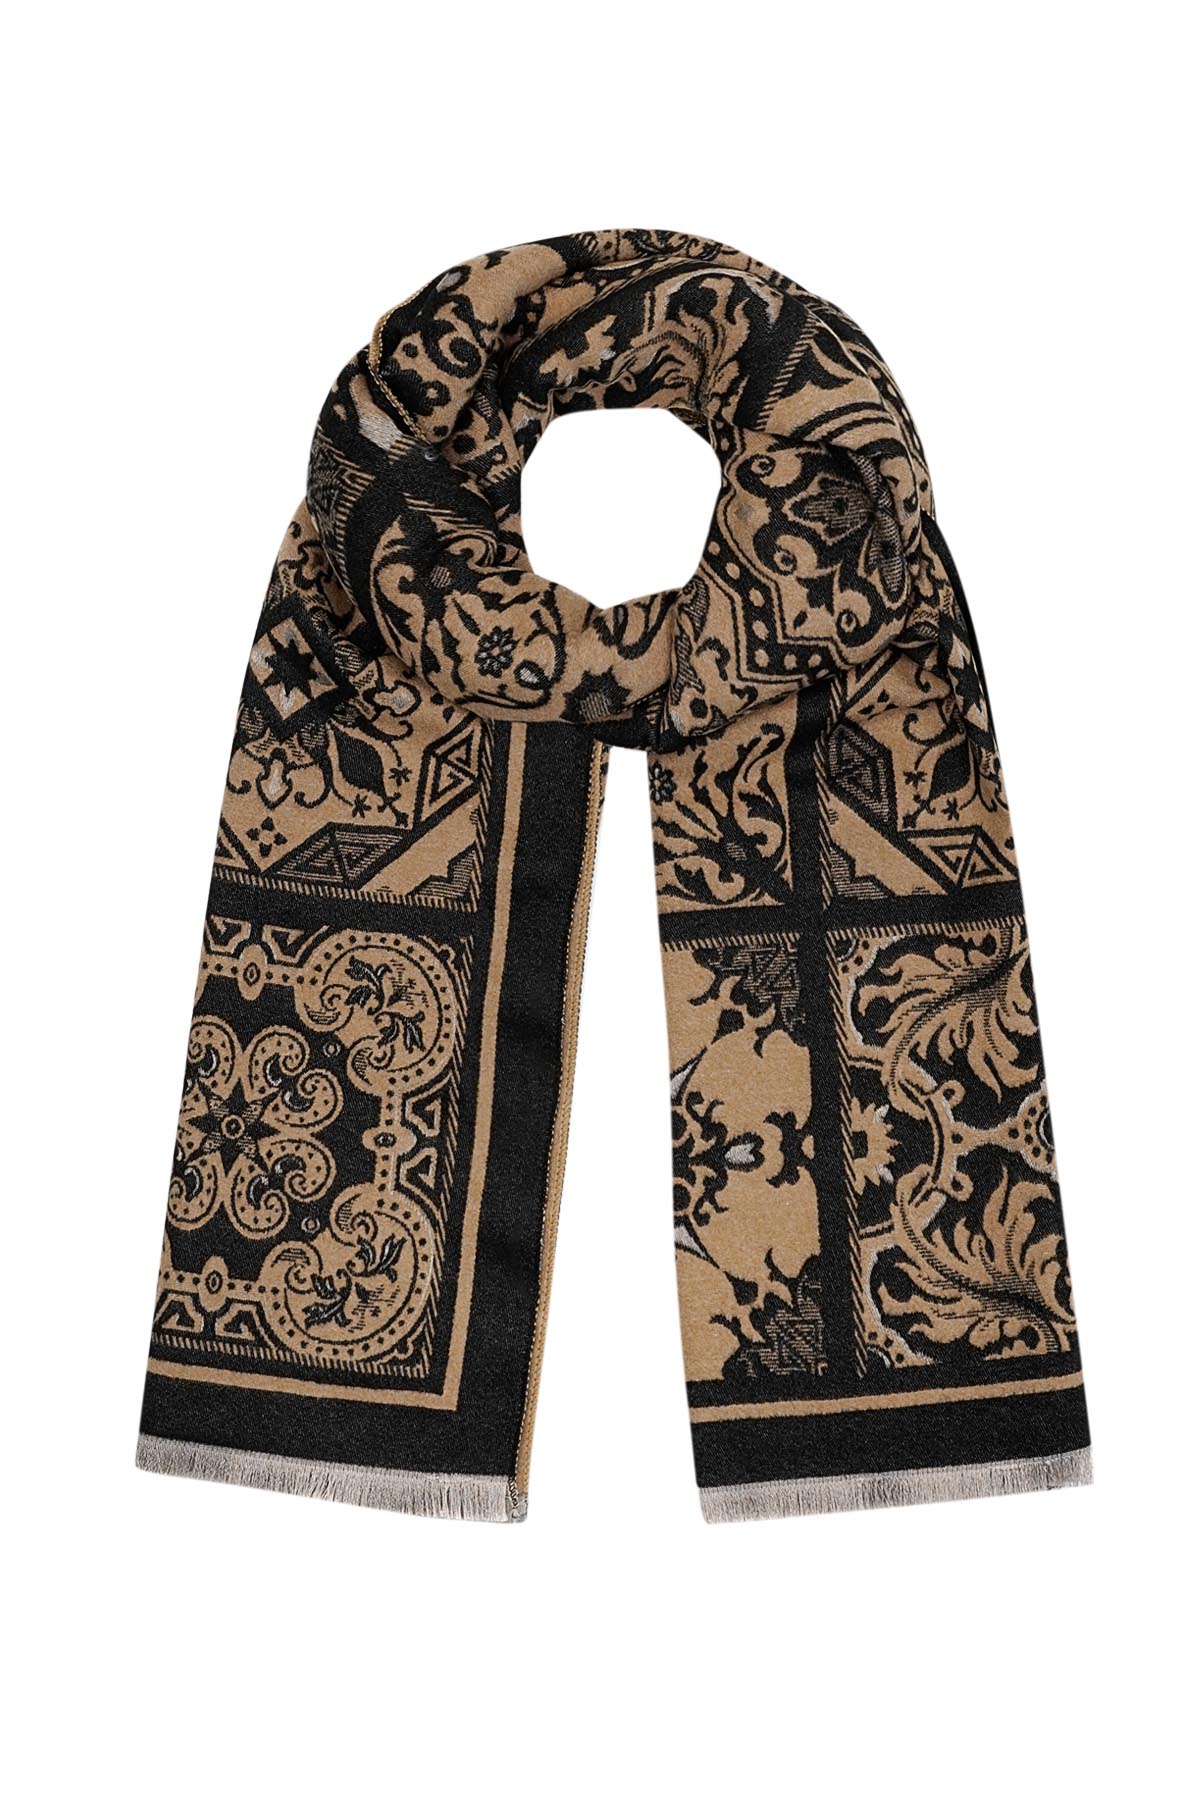 Sjaal met retro print - bruin zwart 